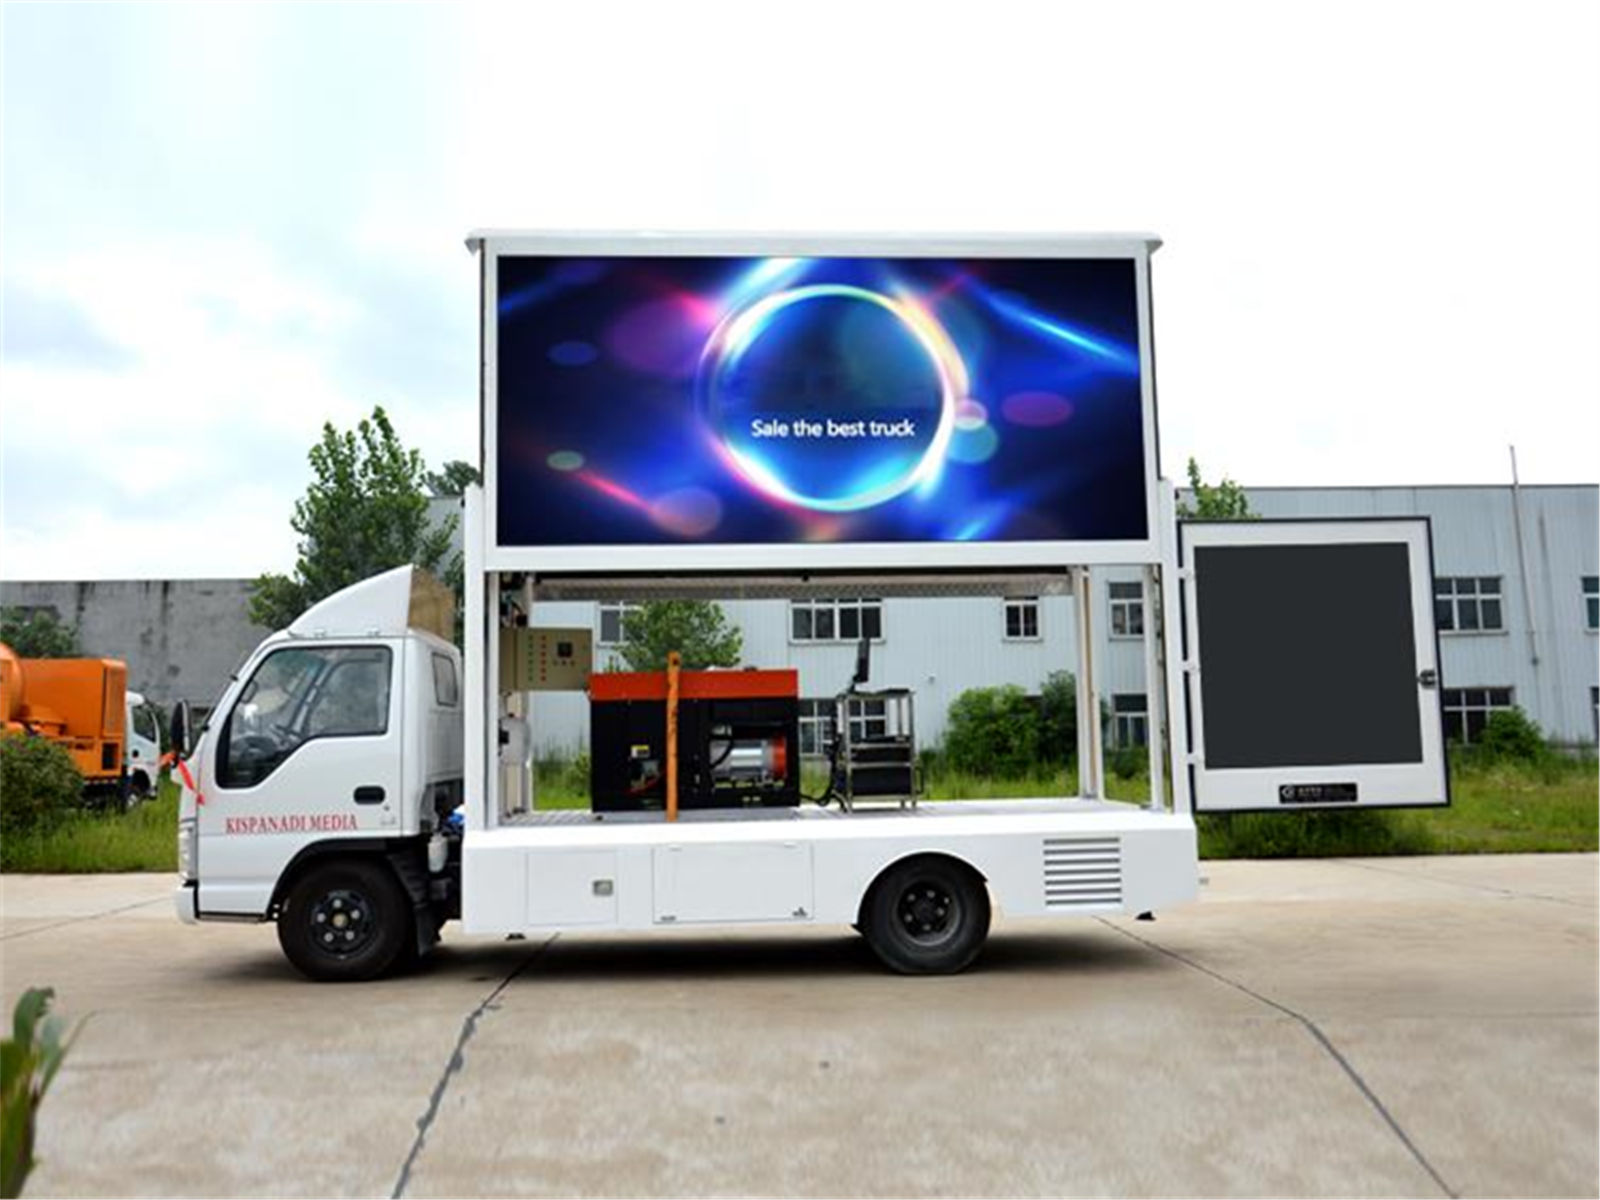 Vente chaude isuzu affichage extérieur conduit publicité camion en Chine -  PowerStar Trucks